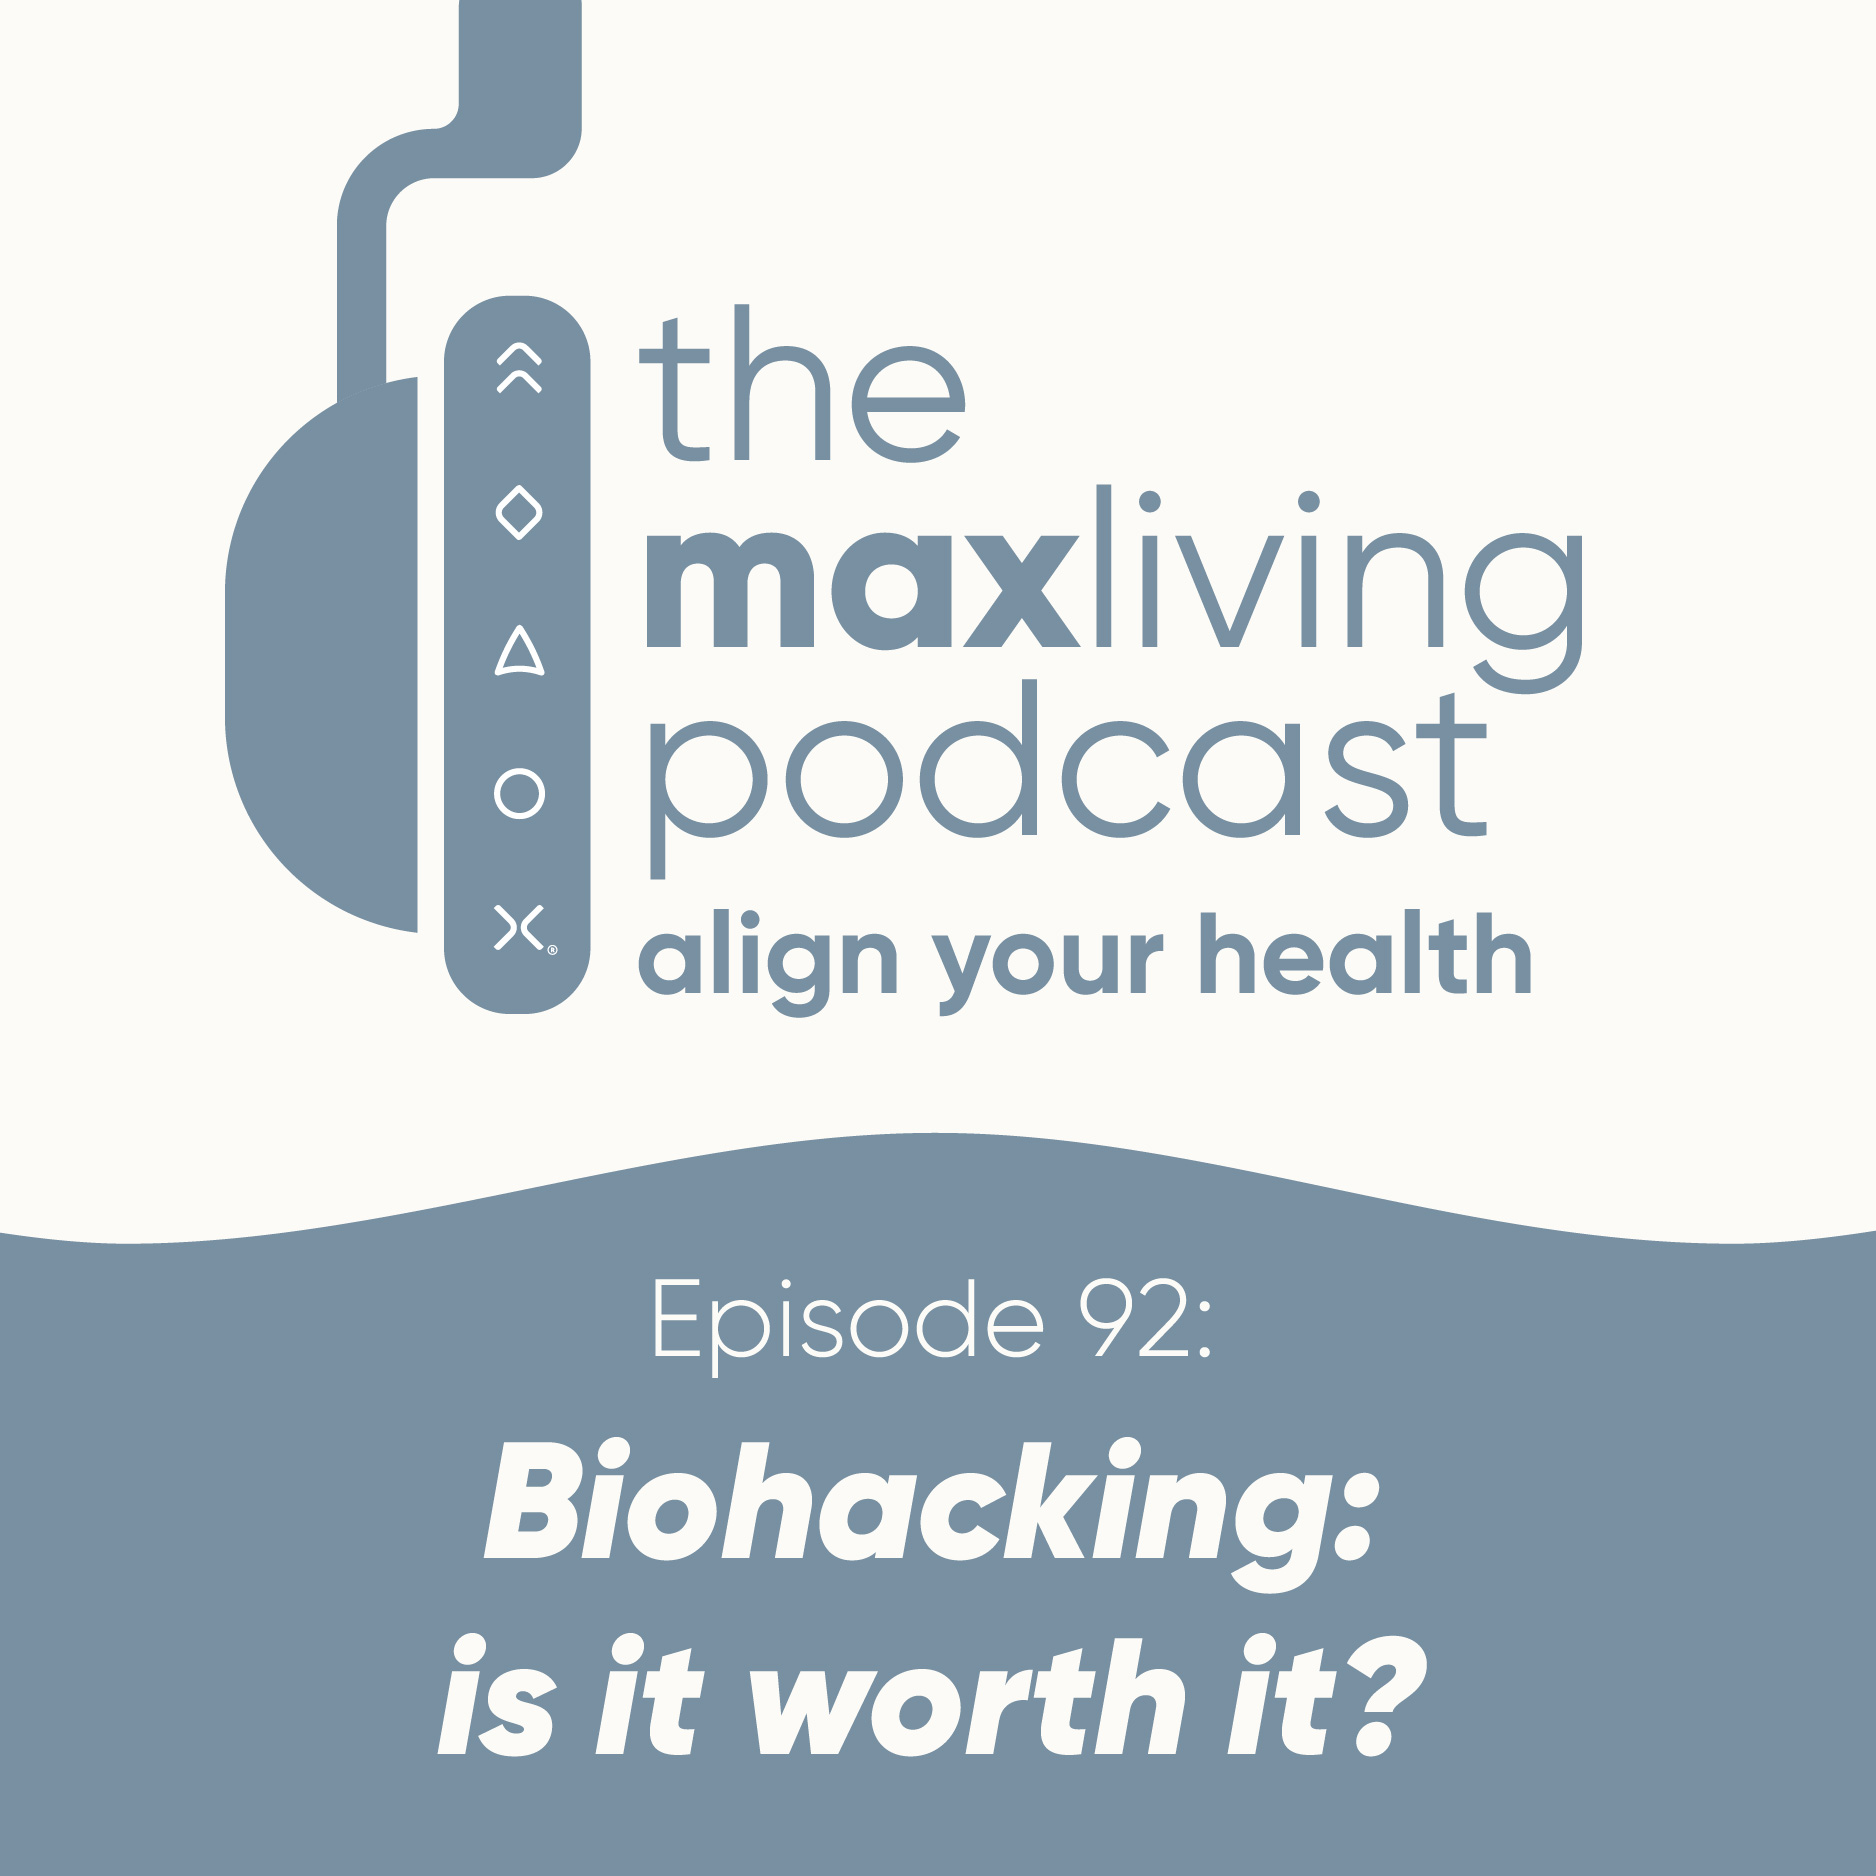 Biohacking: is it worth it?